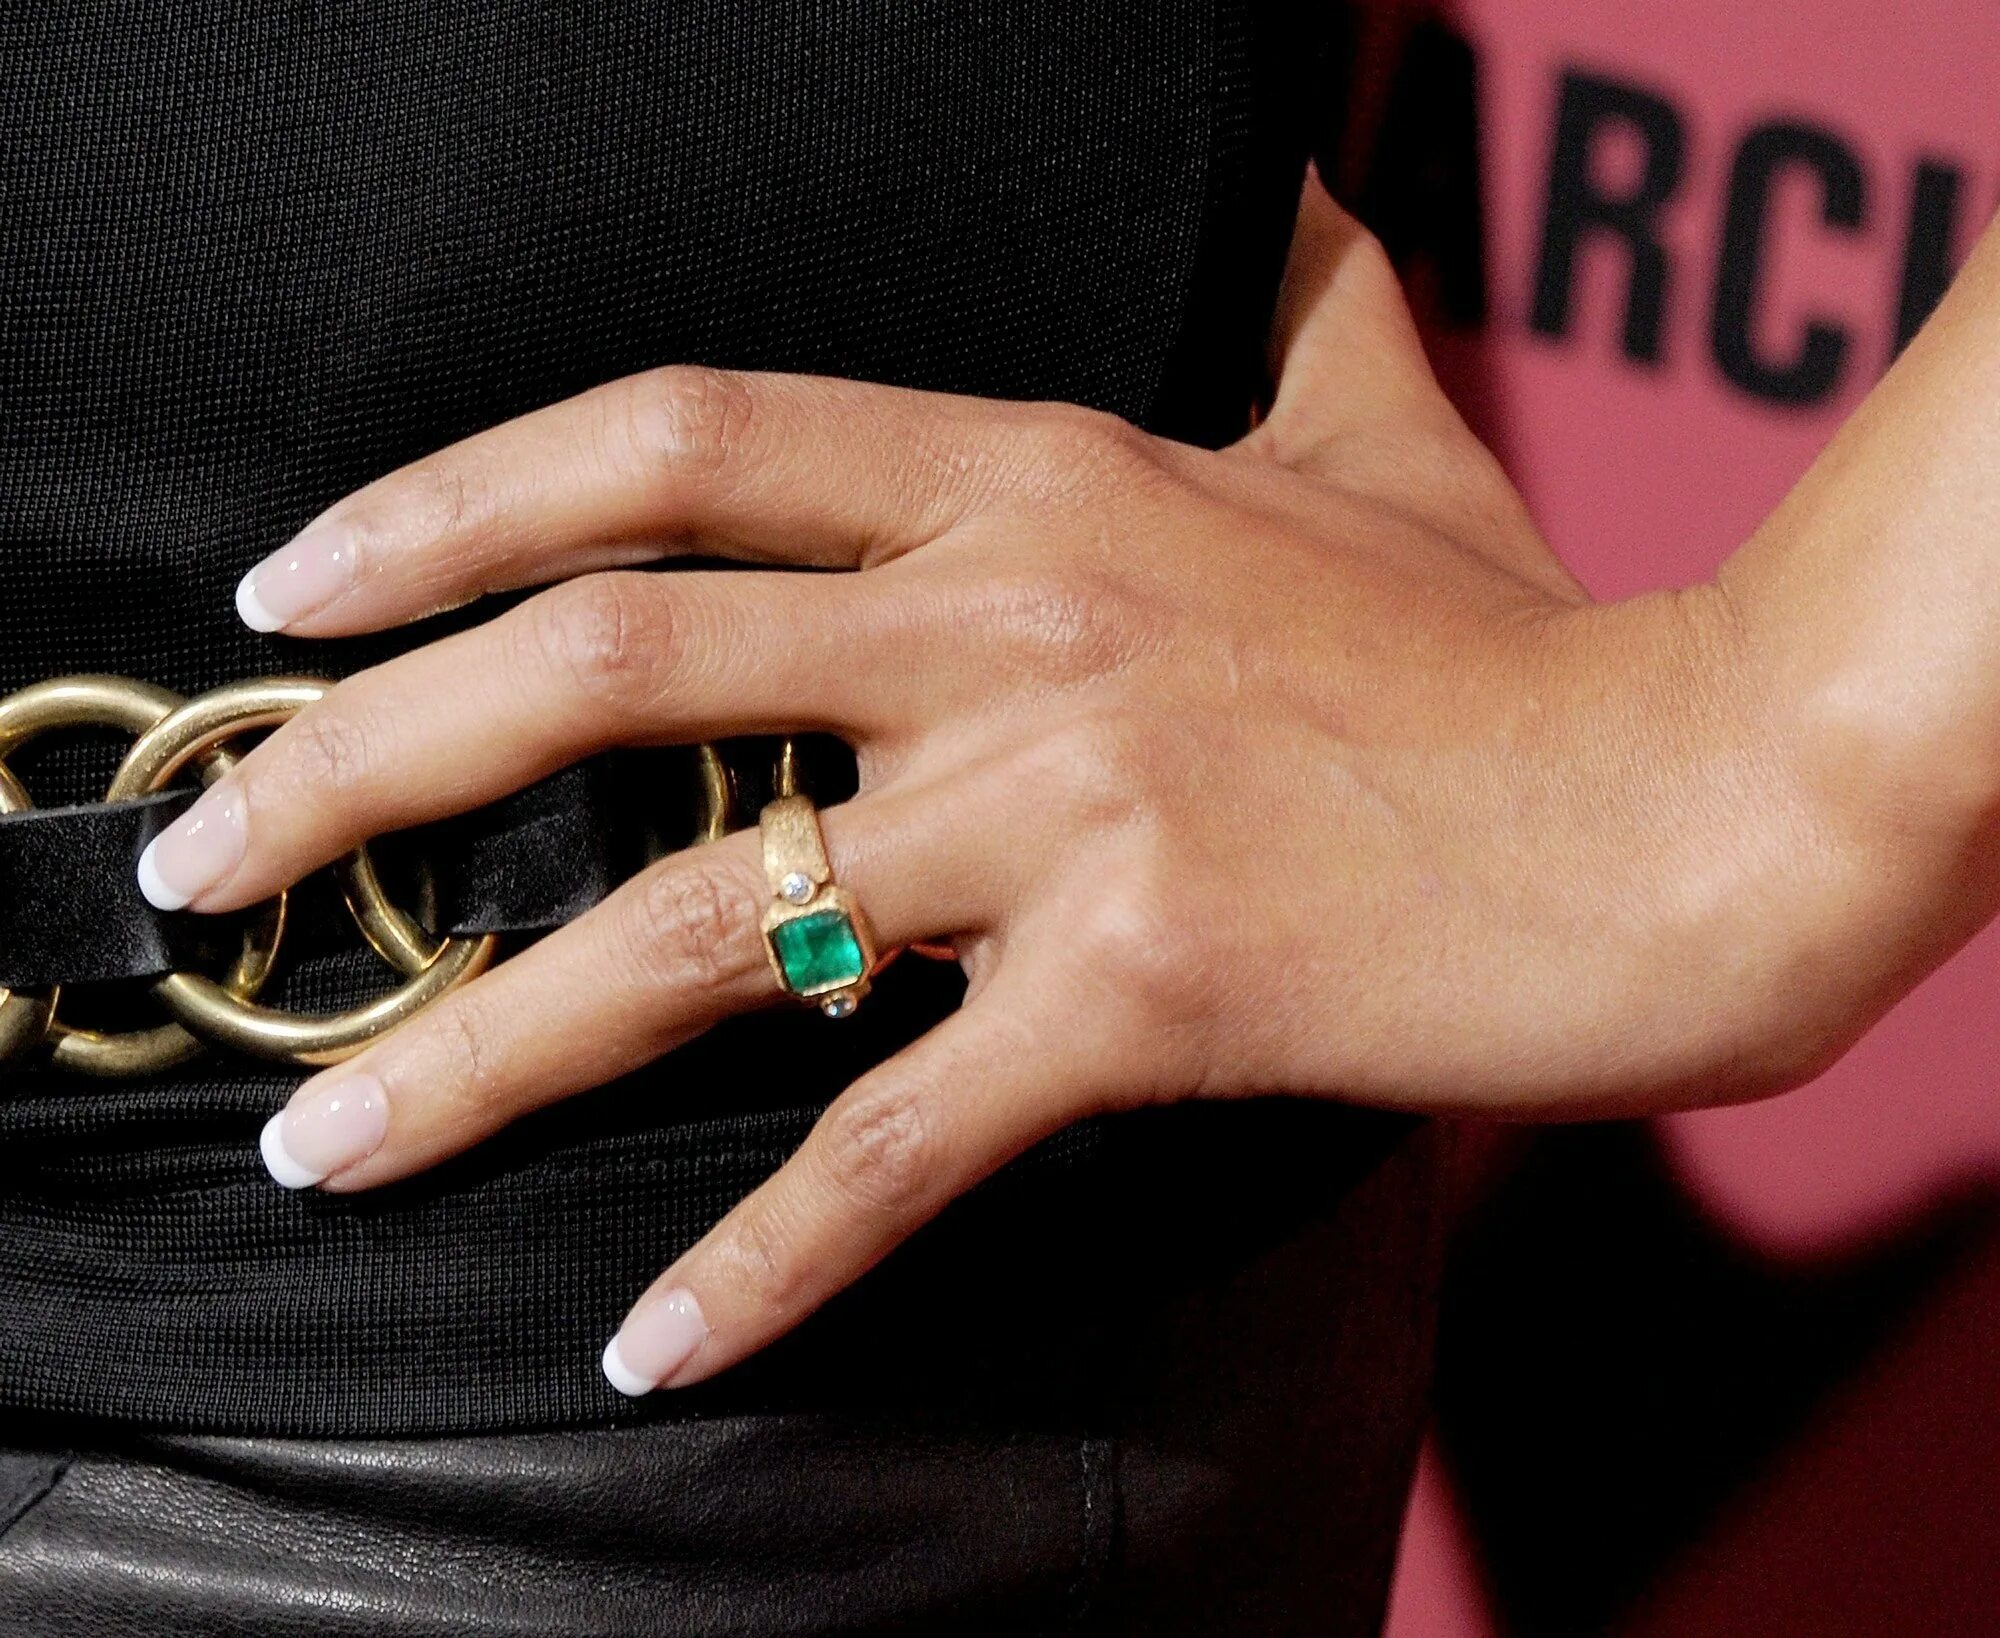 Сальма Хайек кольцо. Кольцо Виктории Бекхэм с изумрудом. Обручальное кольцо Холли Берри. Помолвочное кольцо Сальмы Хайек. Кольцо на мизинце у женщин на правой